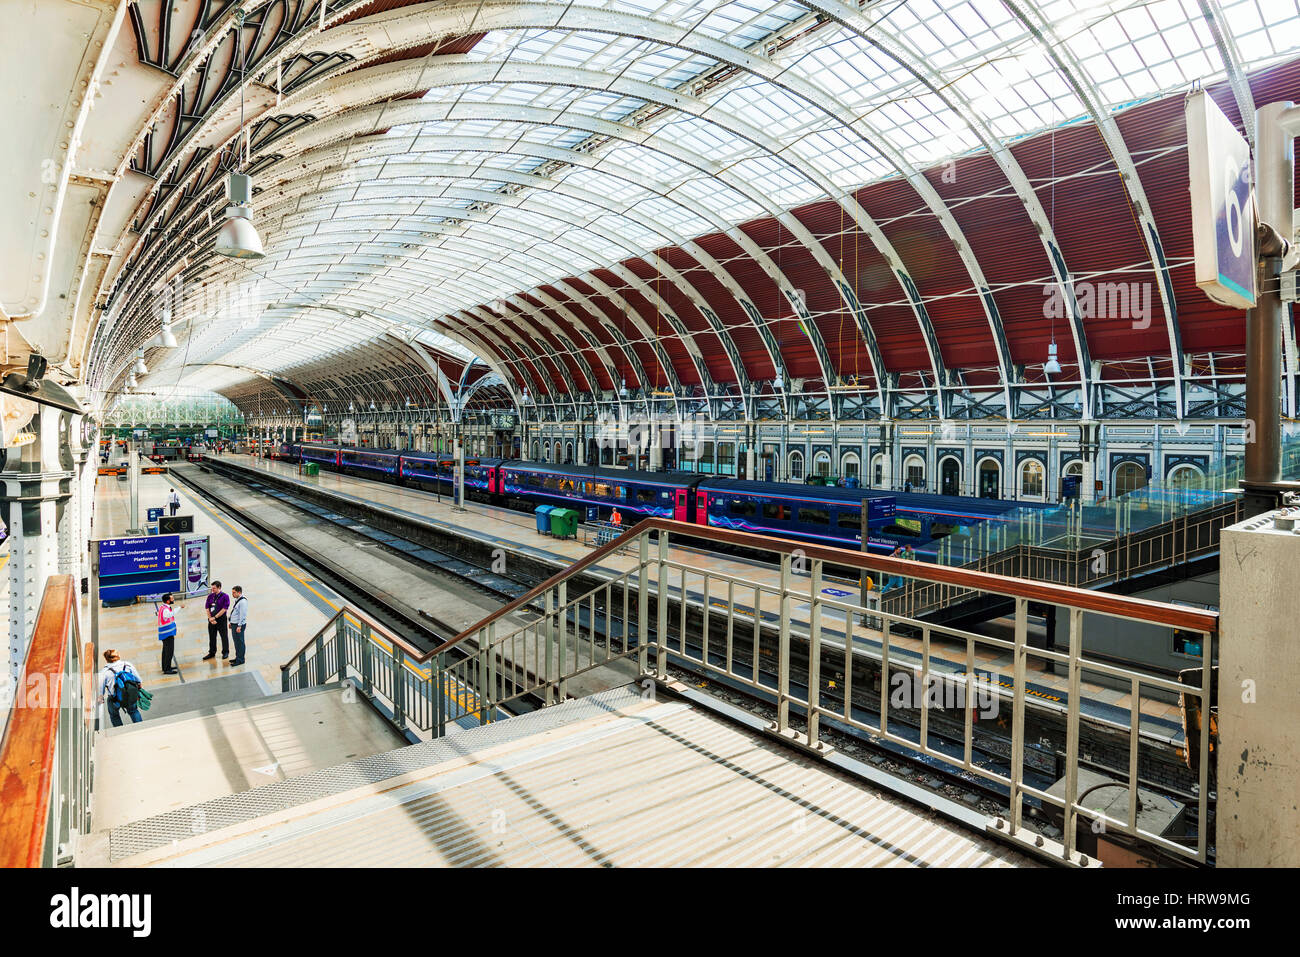 LONDON - SEPTEMBER 08: Dies ist die Innenarchitektur der Paddington Station aus die Treppe wo Sie in der Lage sind zu sehen, einen Blick auf die gesamte Station S Stockfoto